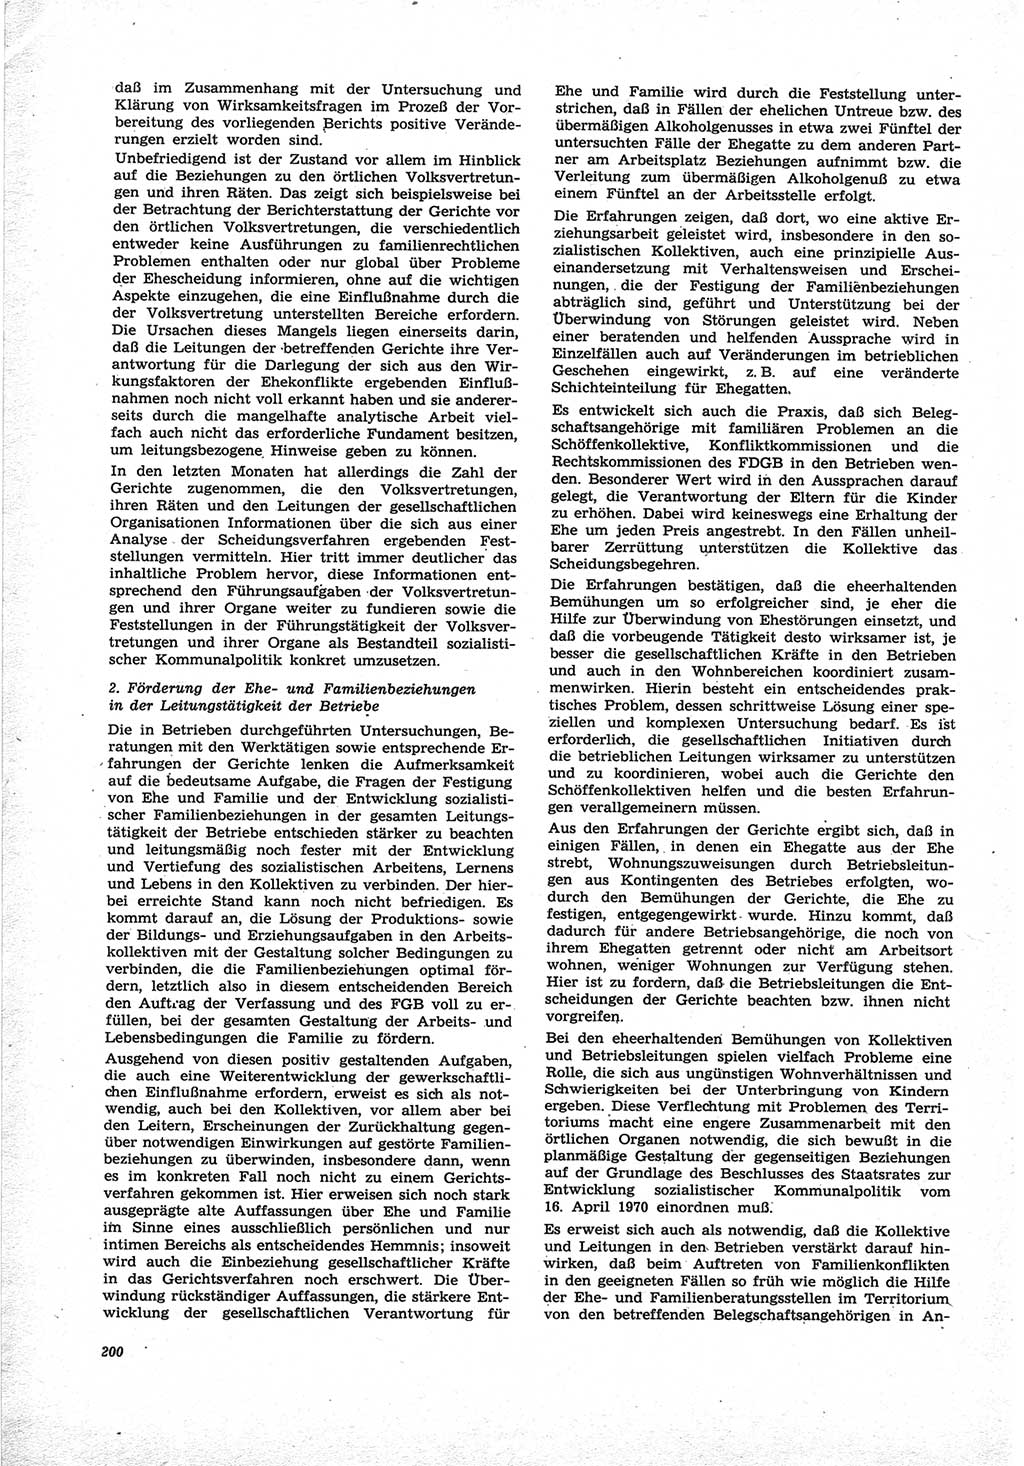 Neue Justiz (NJ), Zeitschrift für Recht und Rechtswissenschaft [Deutsche Demokratische Republik (DDR)], 25. Jahrgang 1971, Seite 200 (NJ DDR 1971, S. 200)